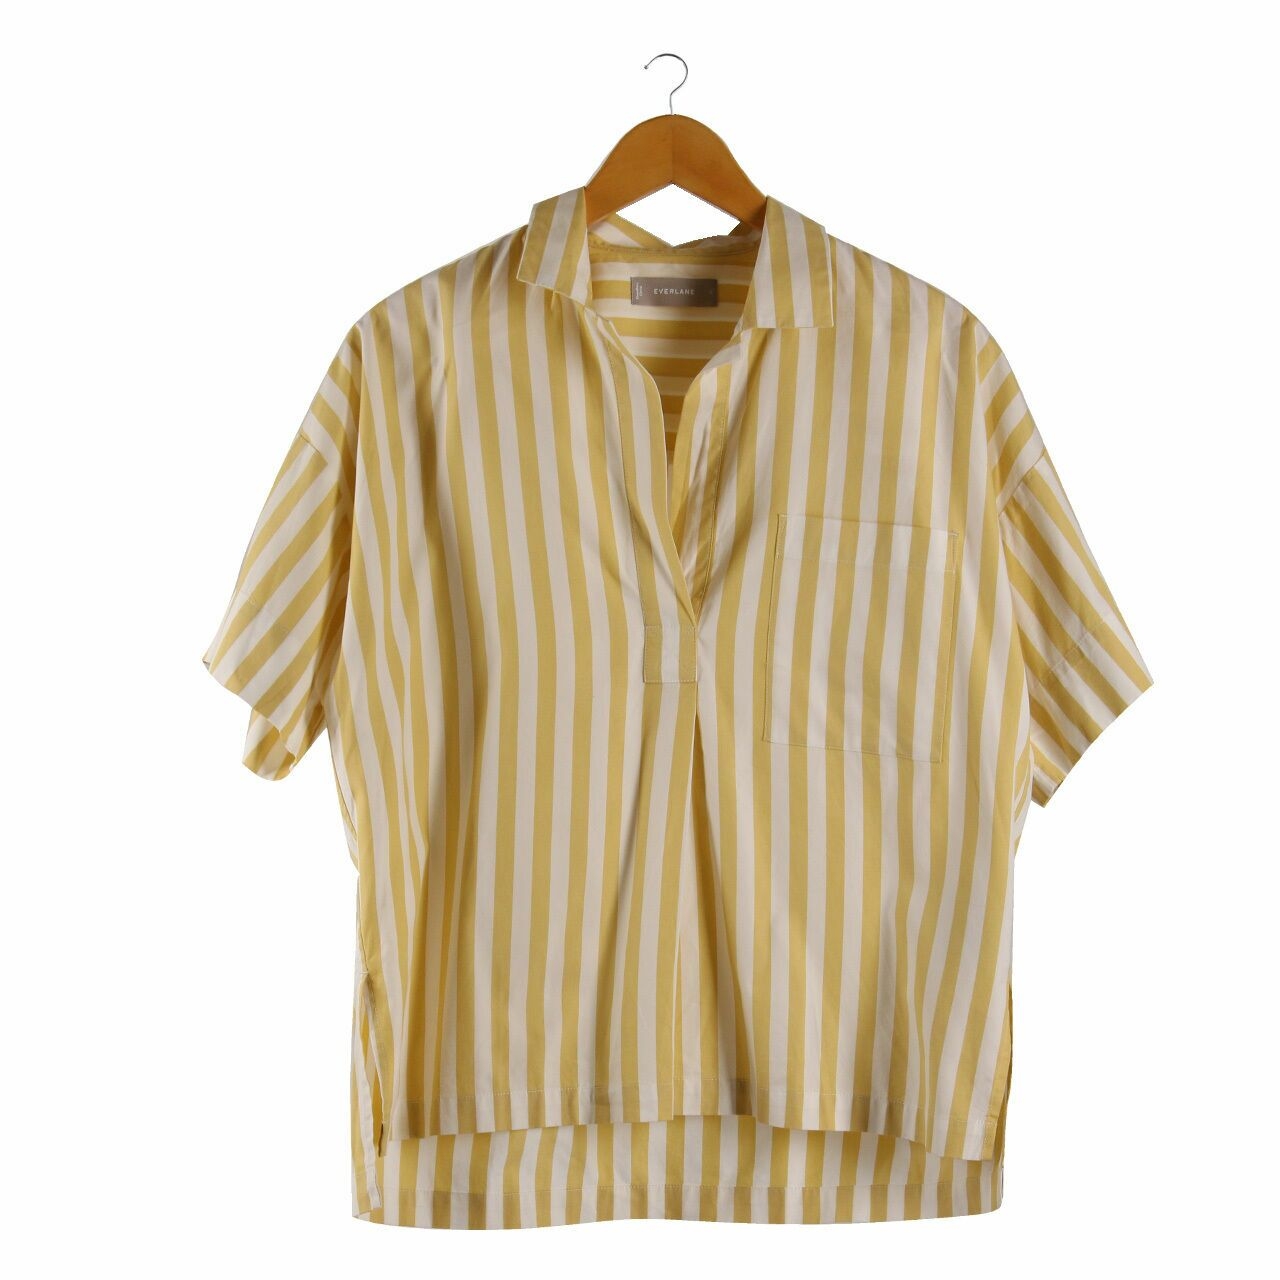 Everlane Yellow & White Stripes Blouse